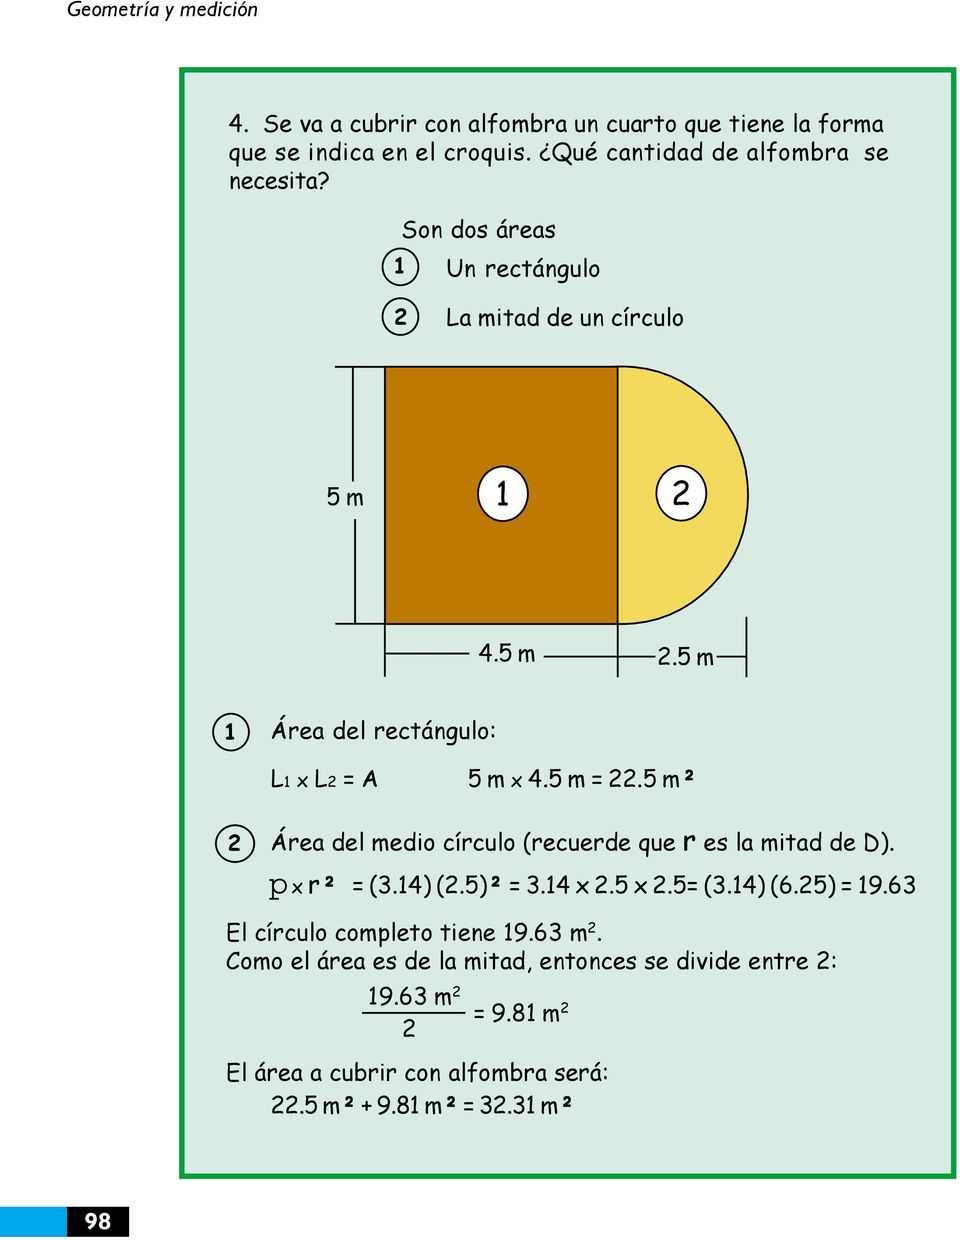 1 4.5 m.5 m 1 Área del rectángulo: L1 x L = A 5 m x 4.5 m =.5 m² Área del medio círculo (recuerde que r es la mitad de D). p x r² = (3.